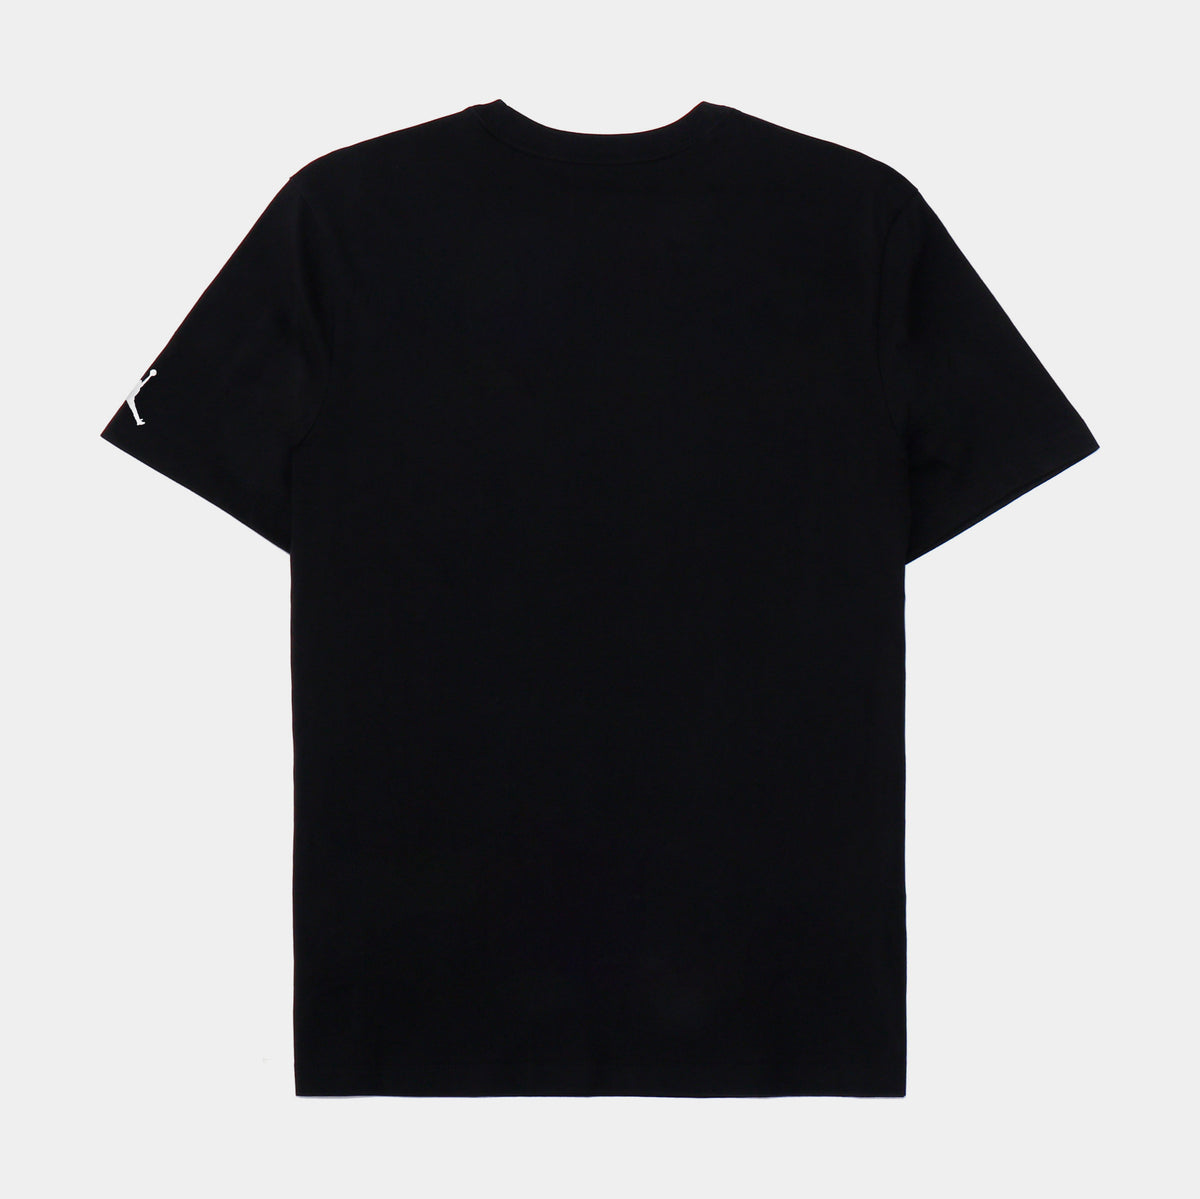 Jordan EMB Air Mens Short Sleeve Shirt Black DM3182-010 – Shoe Palace